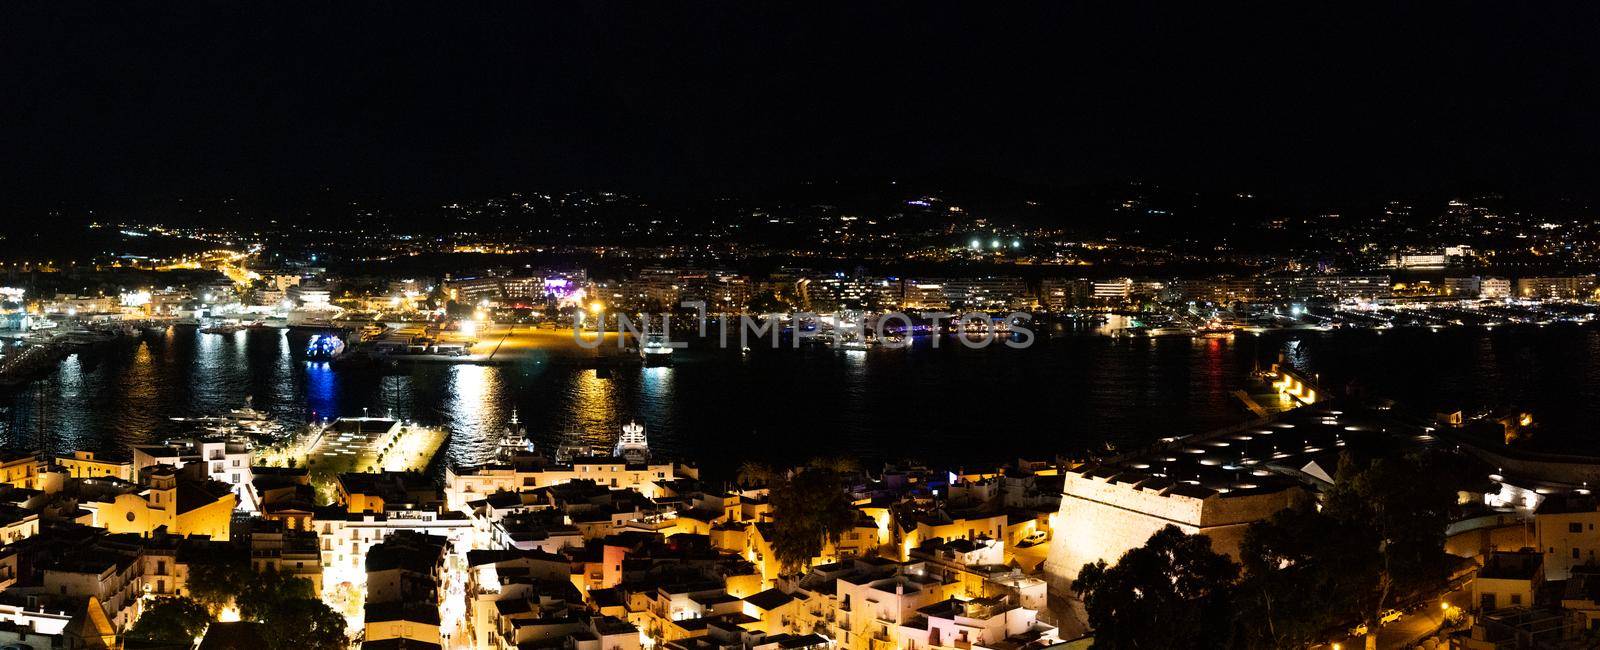 Panoramic night scene of the port of Ibiza town